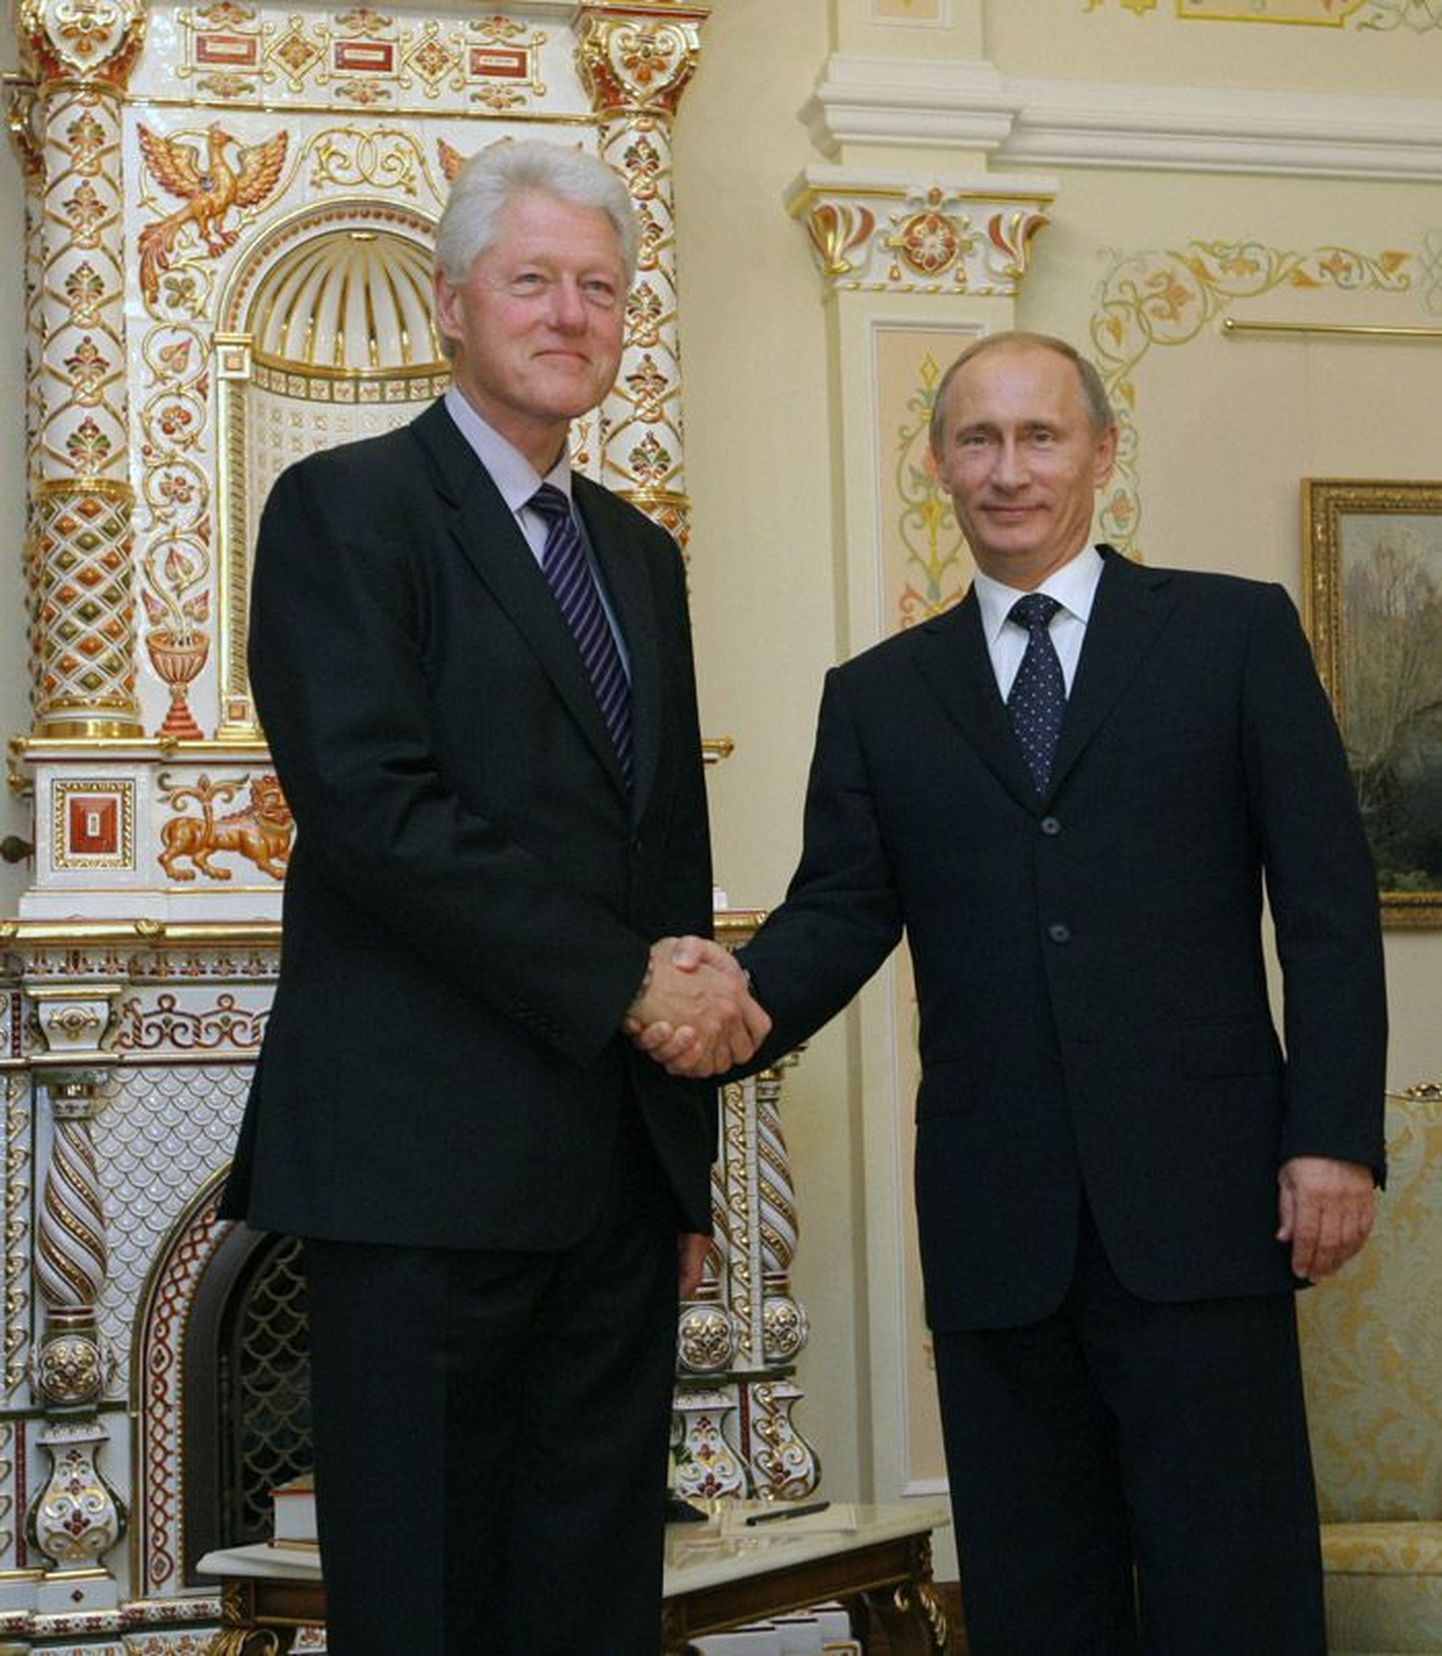 События, связанные со «шпионским скандалом», не должны нанести ущерб российско-американским отношениям, сказал премьер-министр Владимир Путин во время встречи с экс-президентом США Биллом Клинтоном 29 июня в Ново-Огарево.